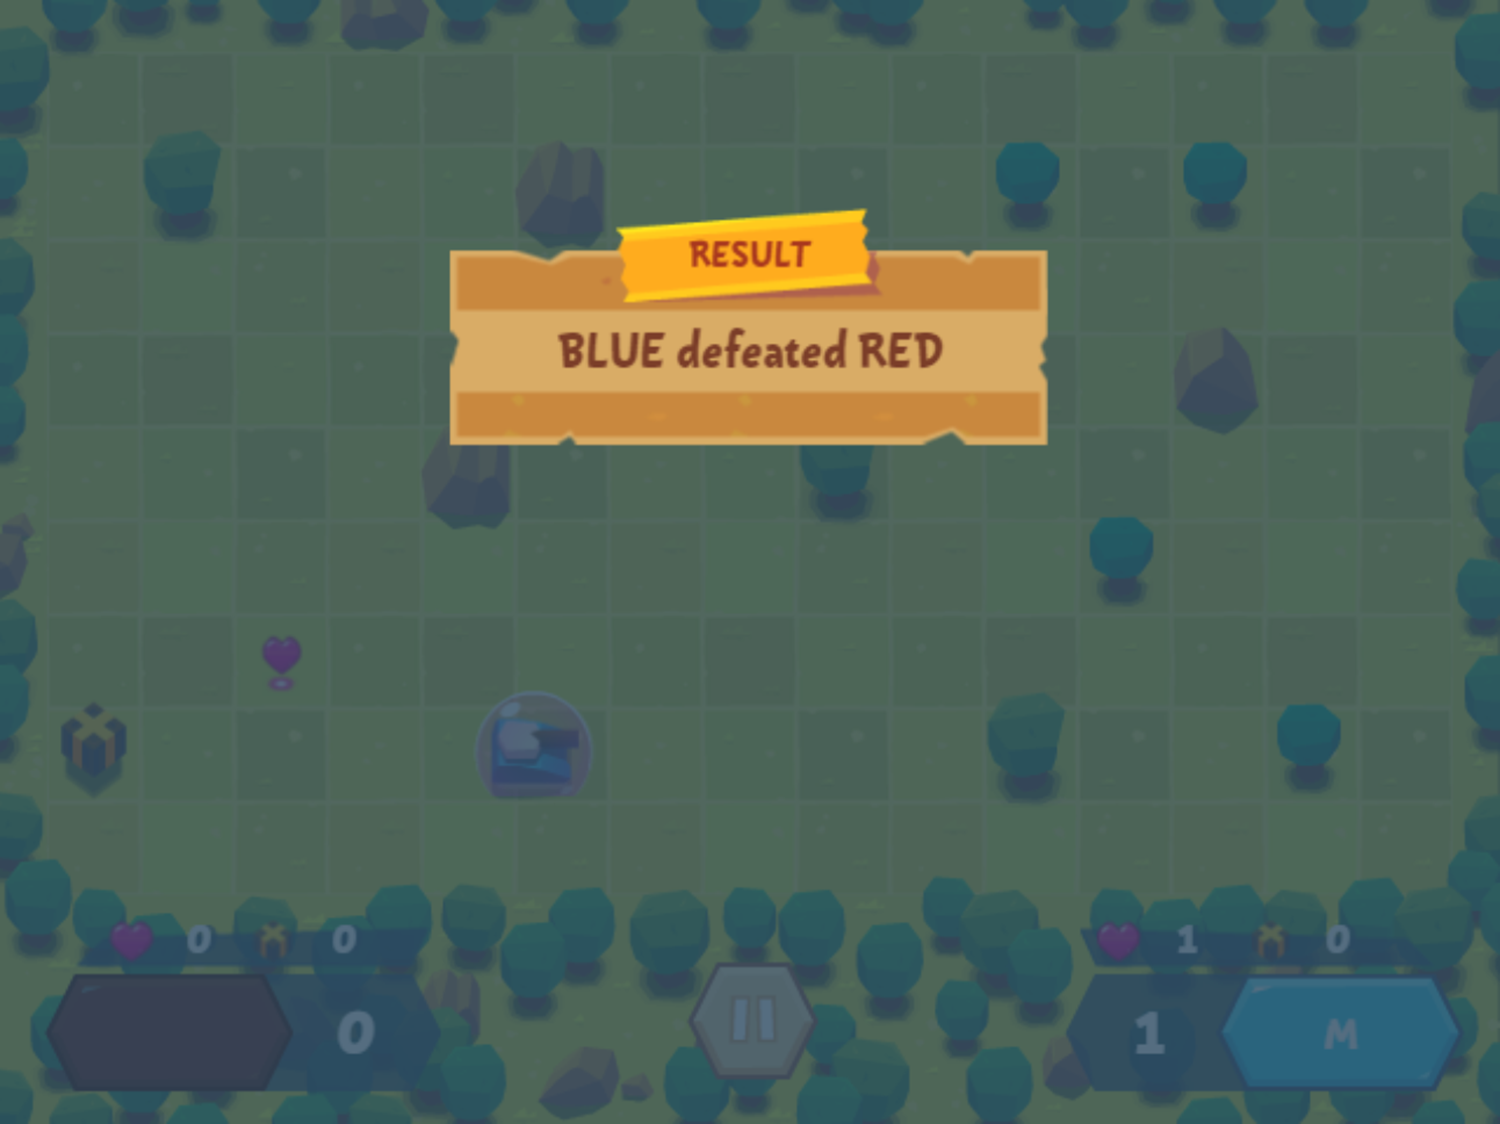 Tank Battle Game Round Won Screenshot.